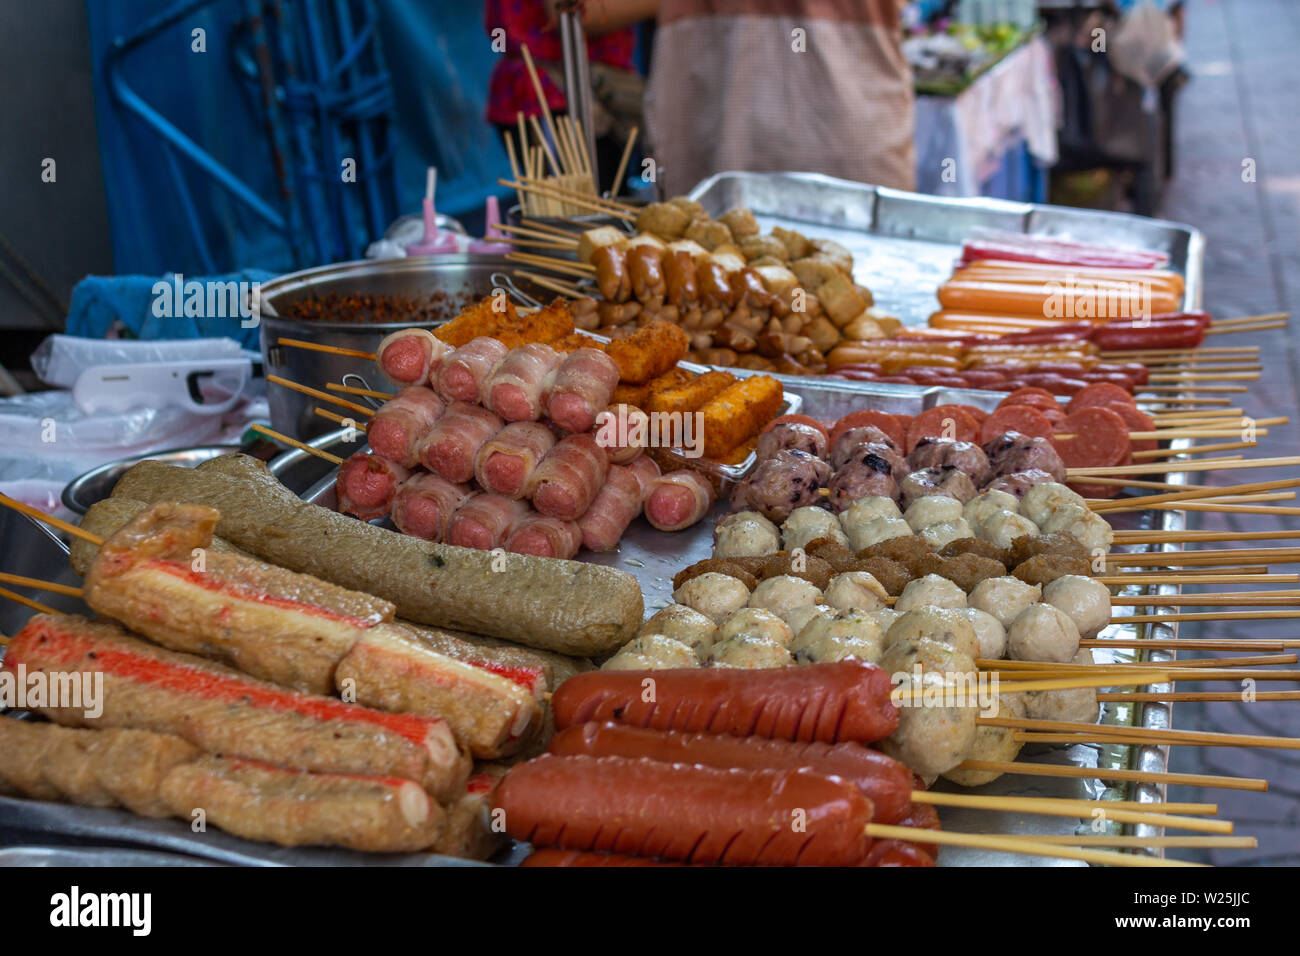 Différents types de viande exposés à être vendus dans un street food à Bangkok, l'Asie Banque D'Images